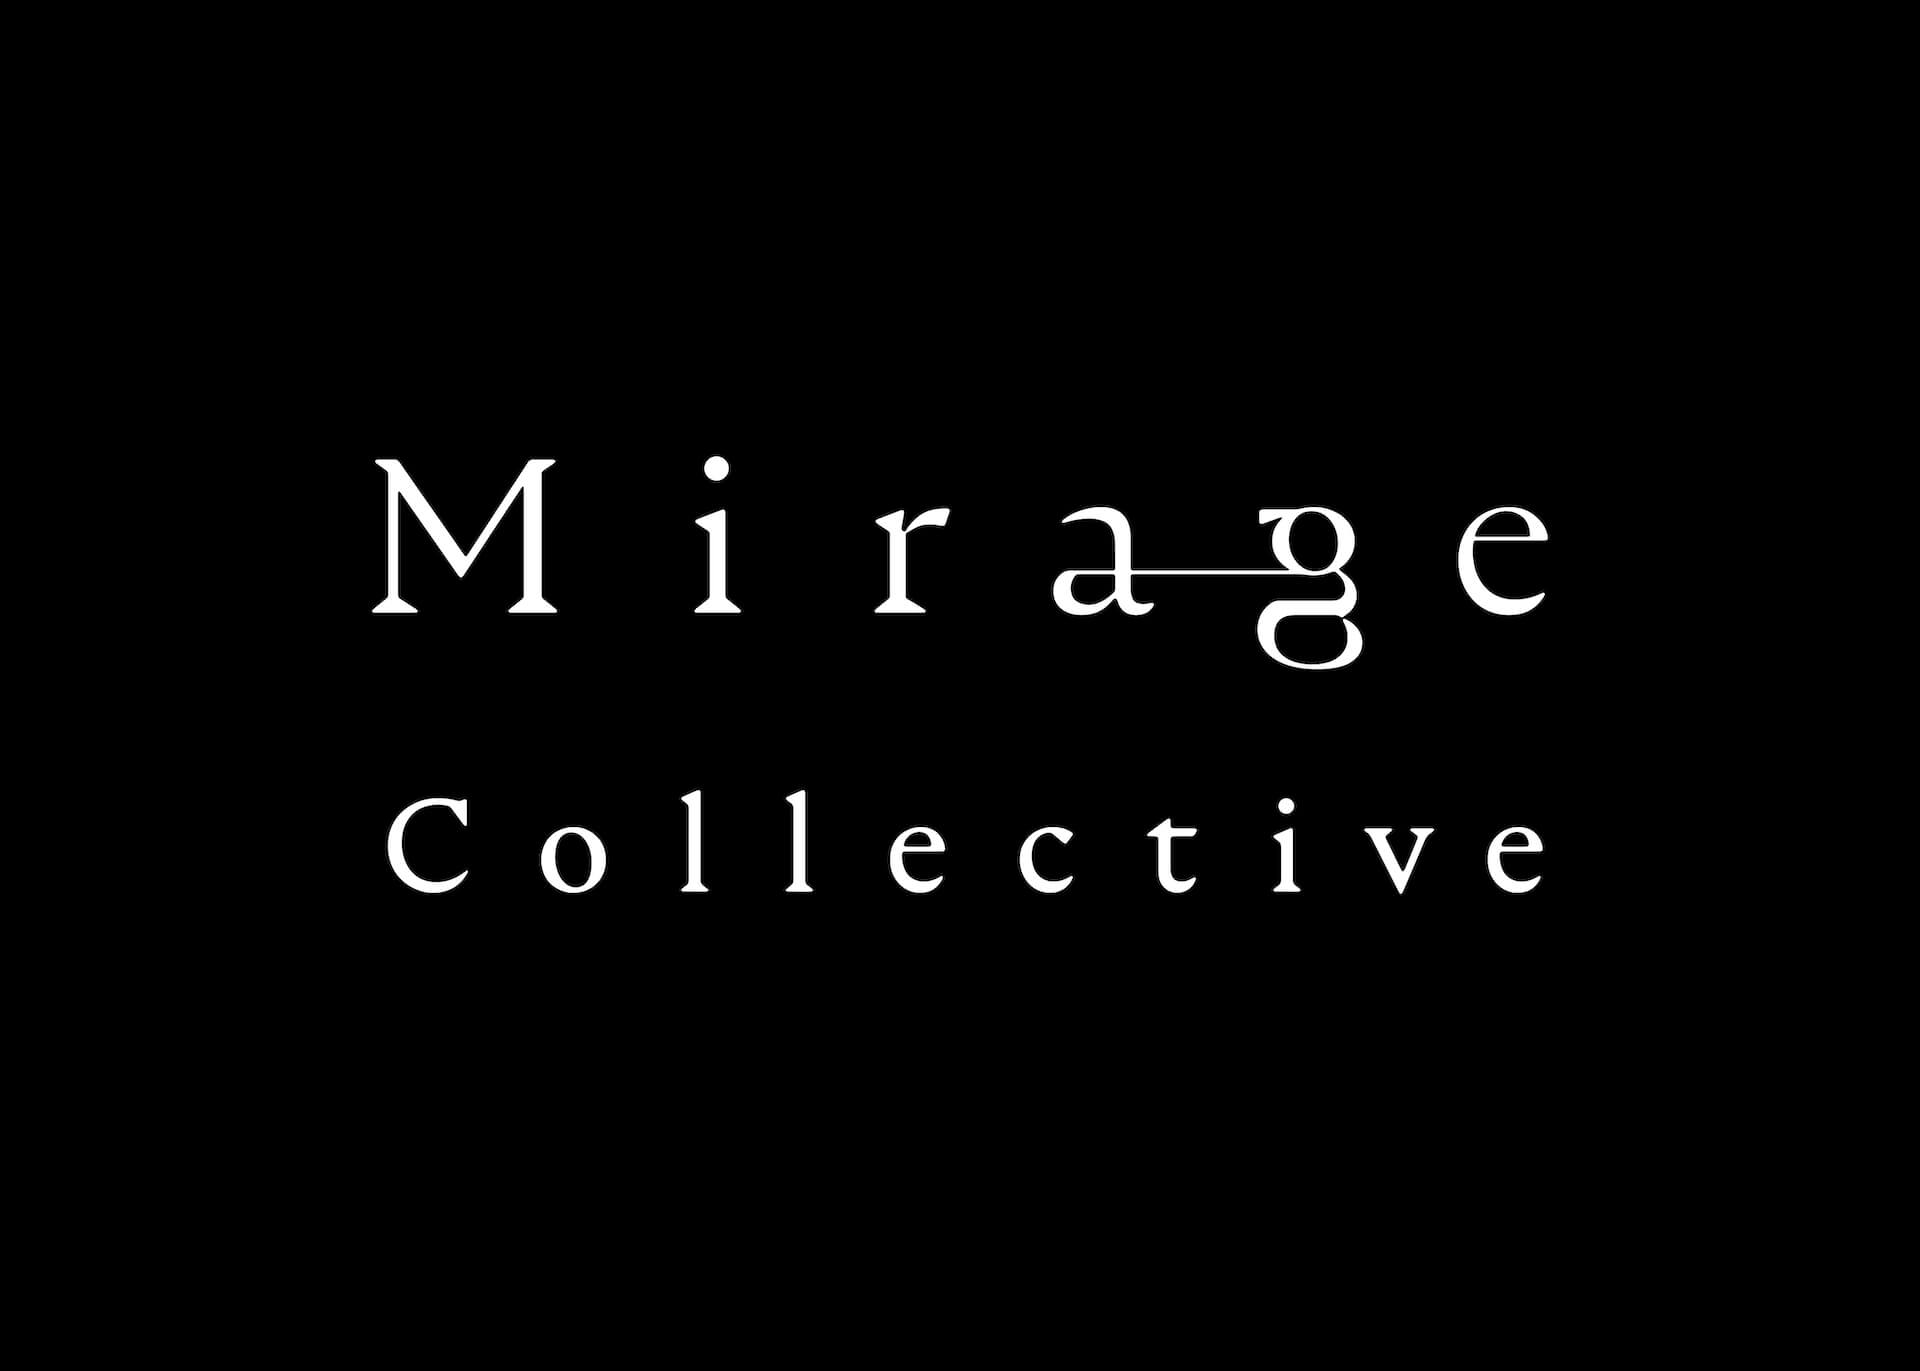 ドラマ『エルピスー希望、あるいは災いー』主題歌、STUTS音楽プロデュース『Mirage Collective』／「Mirage Op.2」が配信 music221115-mirage-collective-03